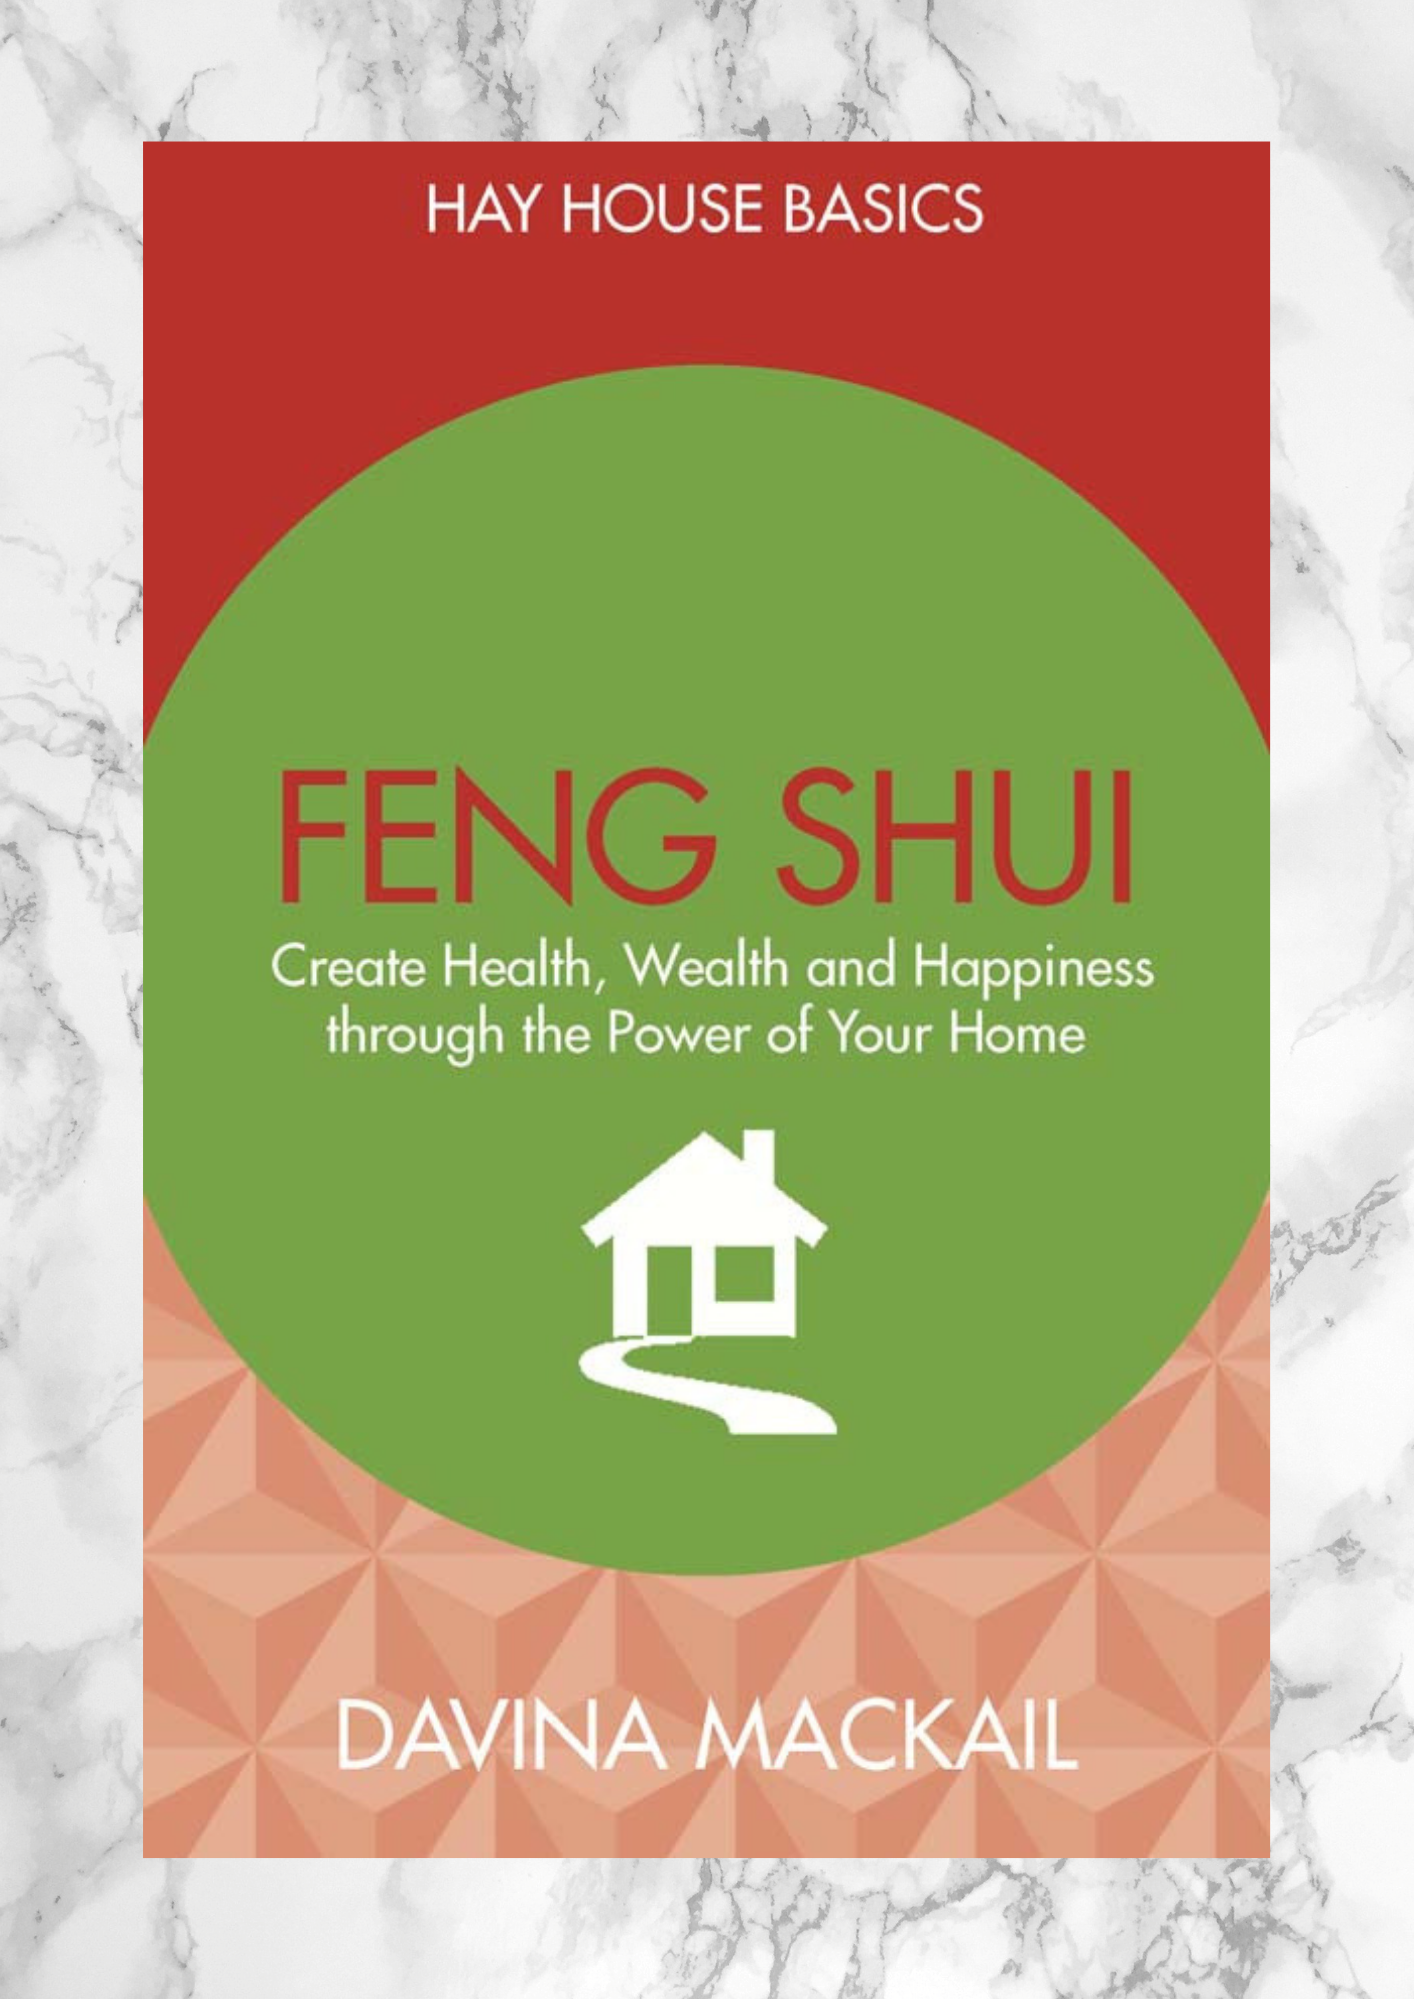 Hay House Basics: Feng Shui